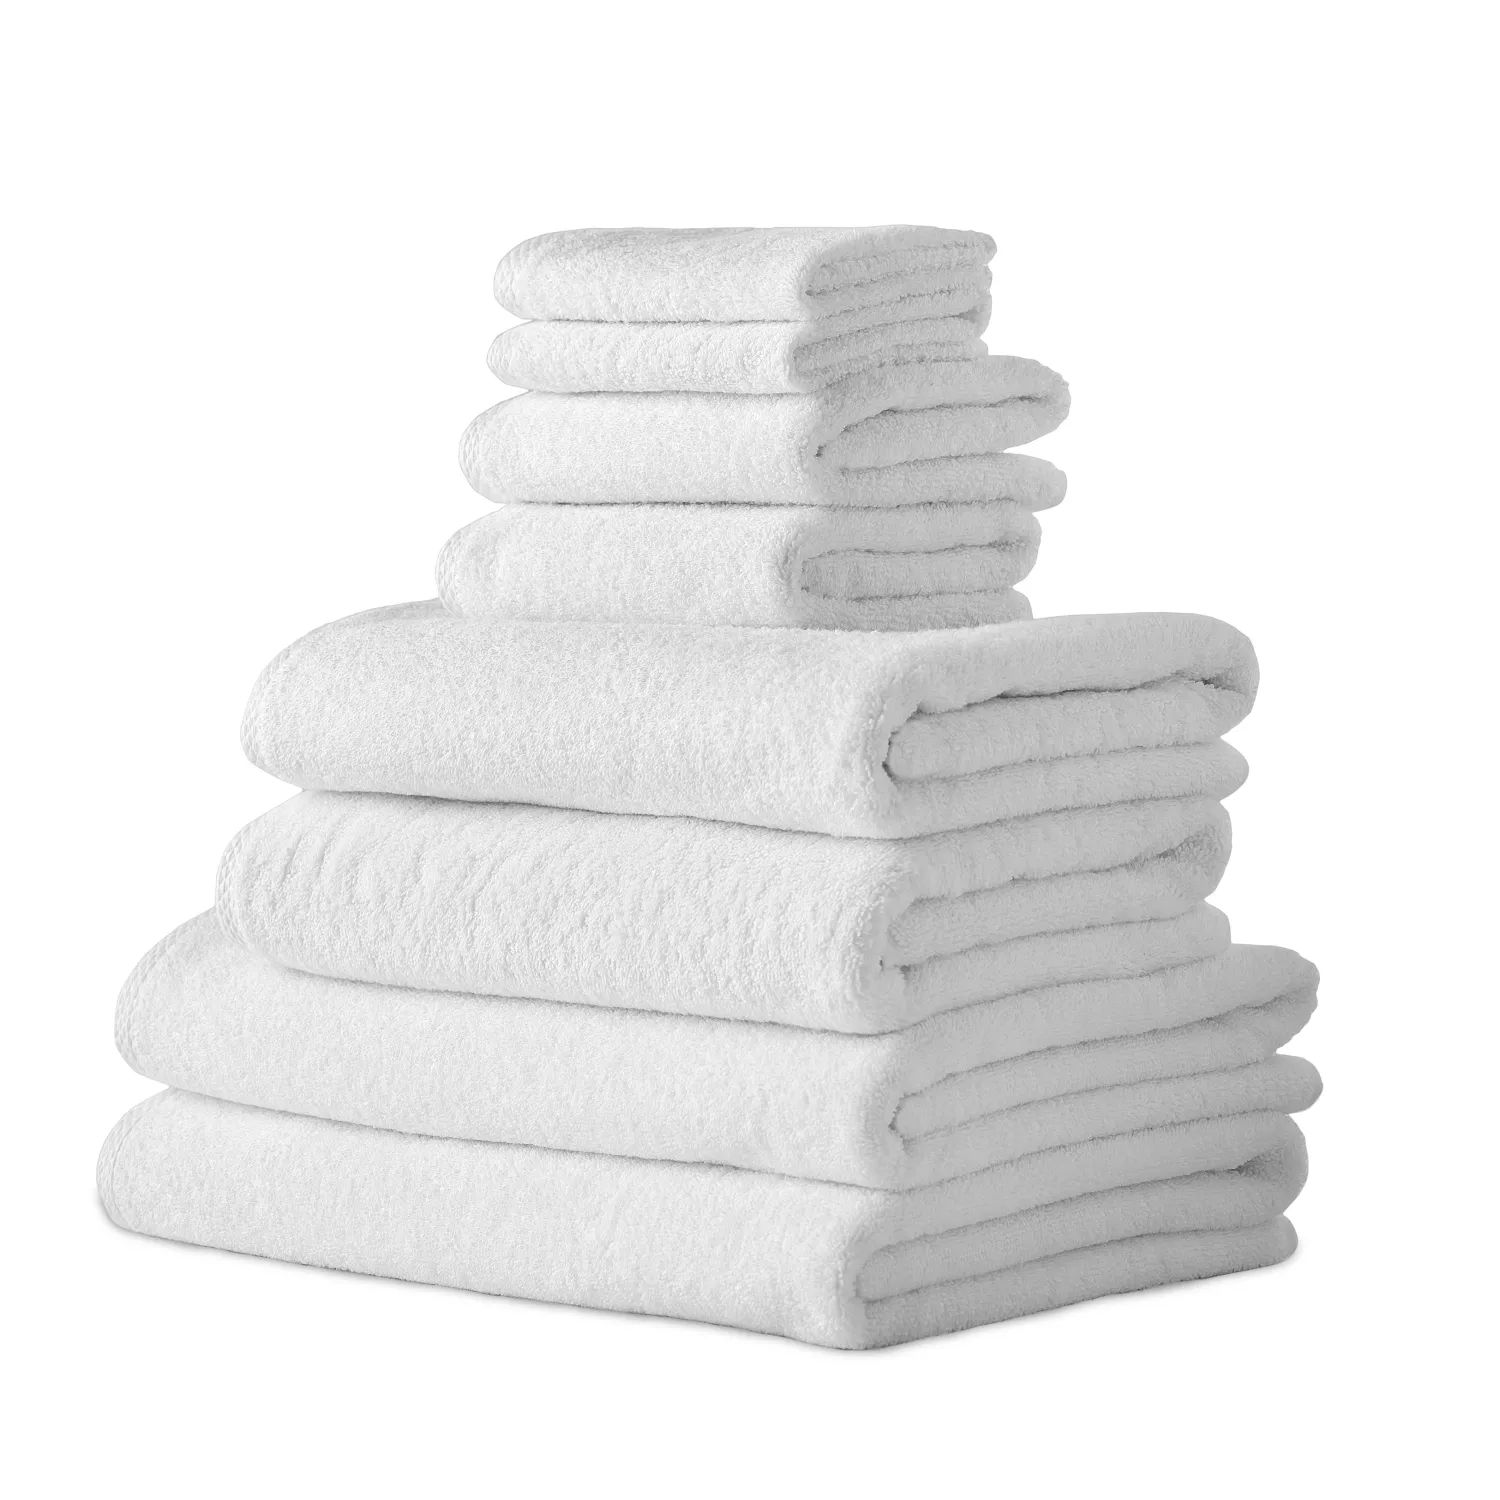 Классические турецкие полотенца из натурального хлопка, мягкие впитывающие гостиничные банные полотенца, набор из 8 предметов, белый